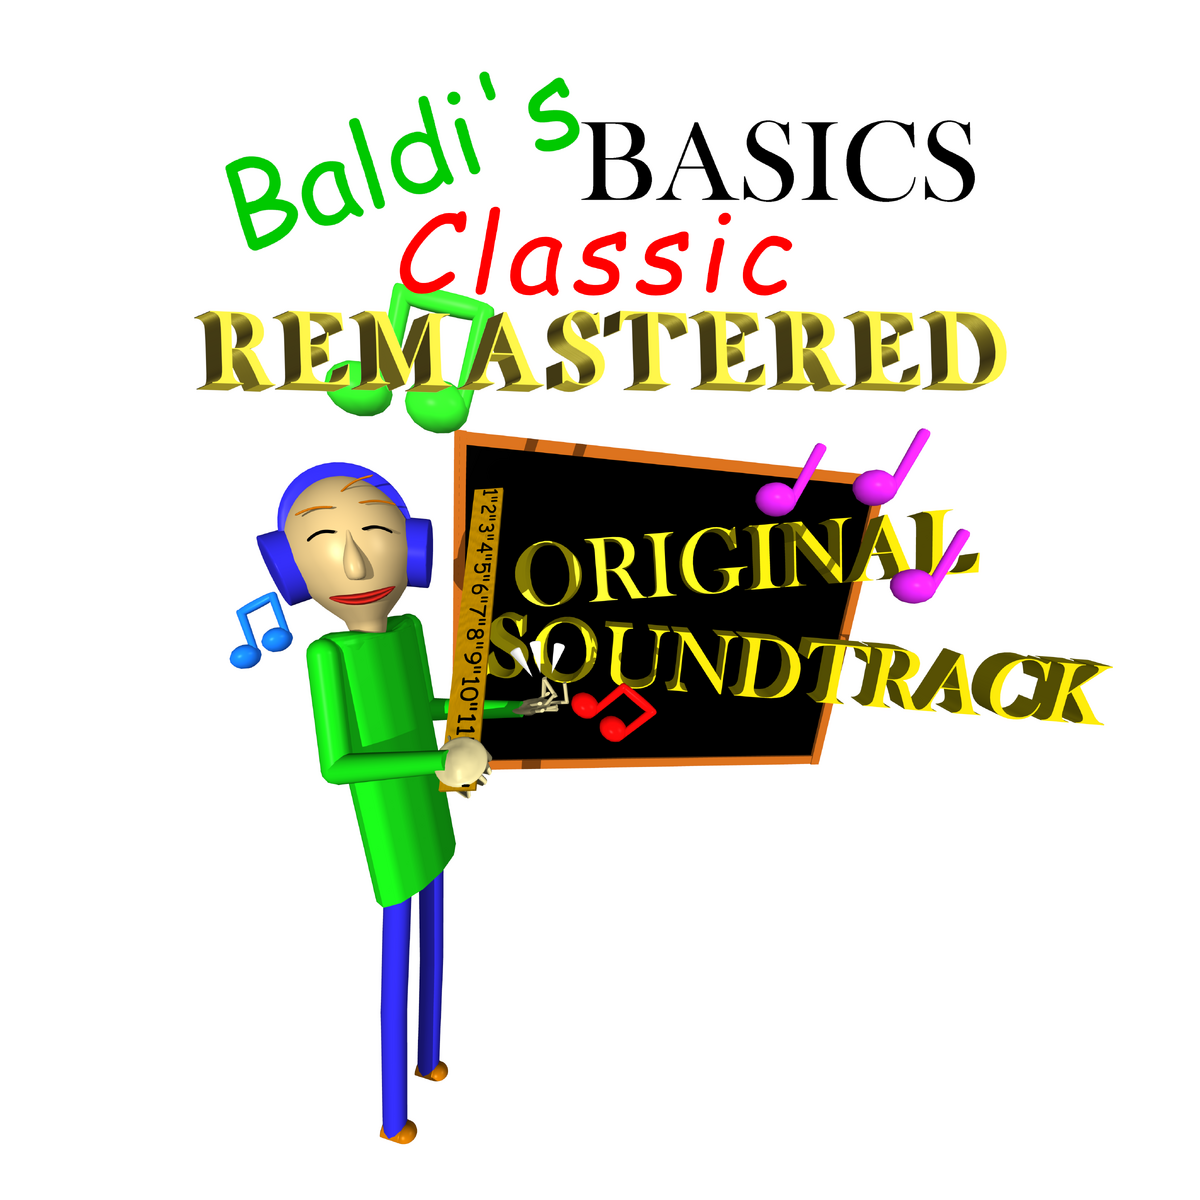 I remade the Baldi's Basics Plus unused midis! 